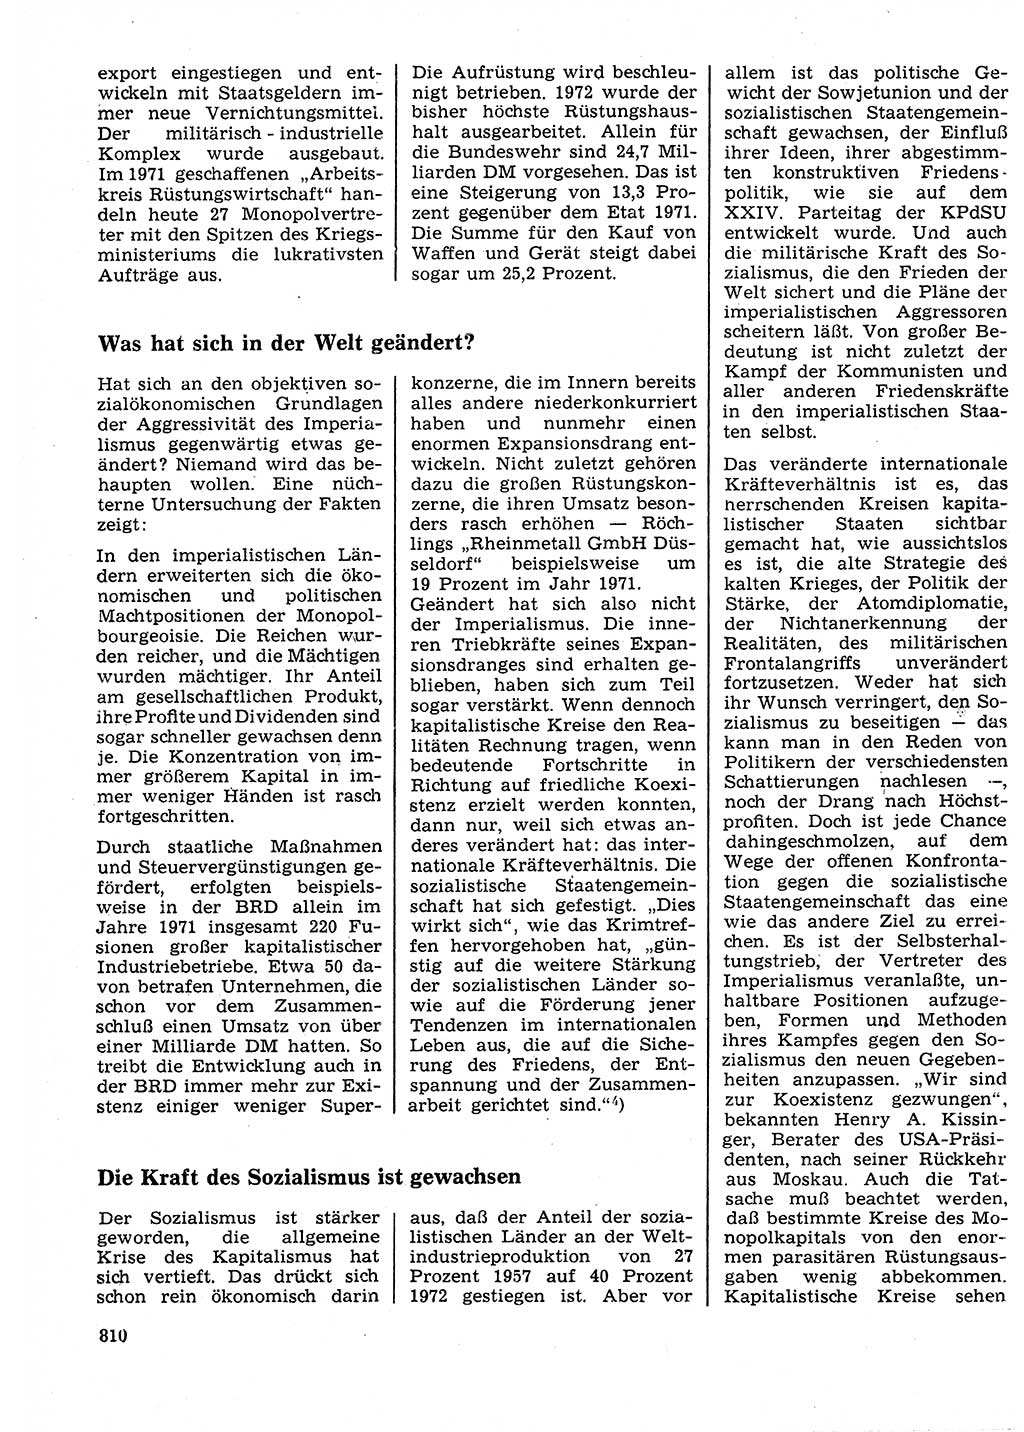 Neuer Weg (NW), Organ des Zentralkomitees (ZK) der SED (Sozialistische Einheitspartei Deutschlands) für Fragen des Parteilebens, 27. Jahrgang [Deutsche Demokratische Republik (DDR)] 1972, Seite 810 (NW ZK SED DDR 1972, S. 810)